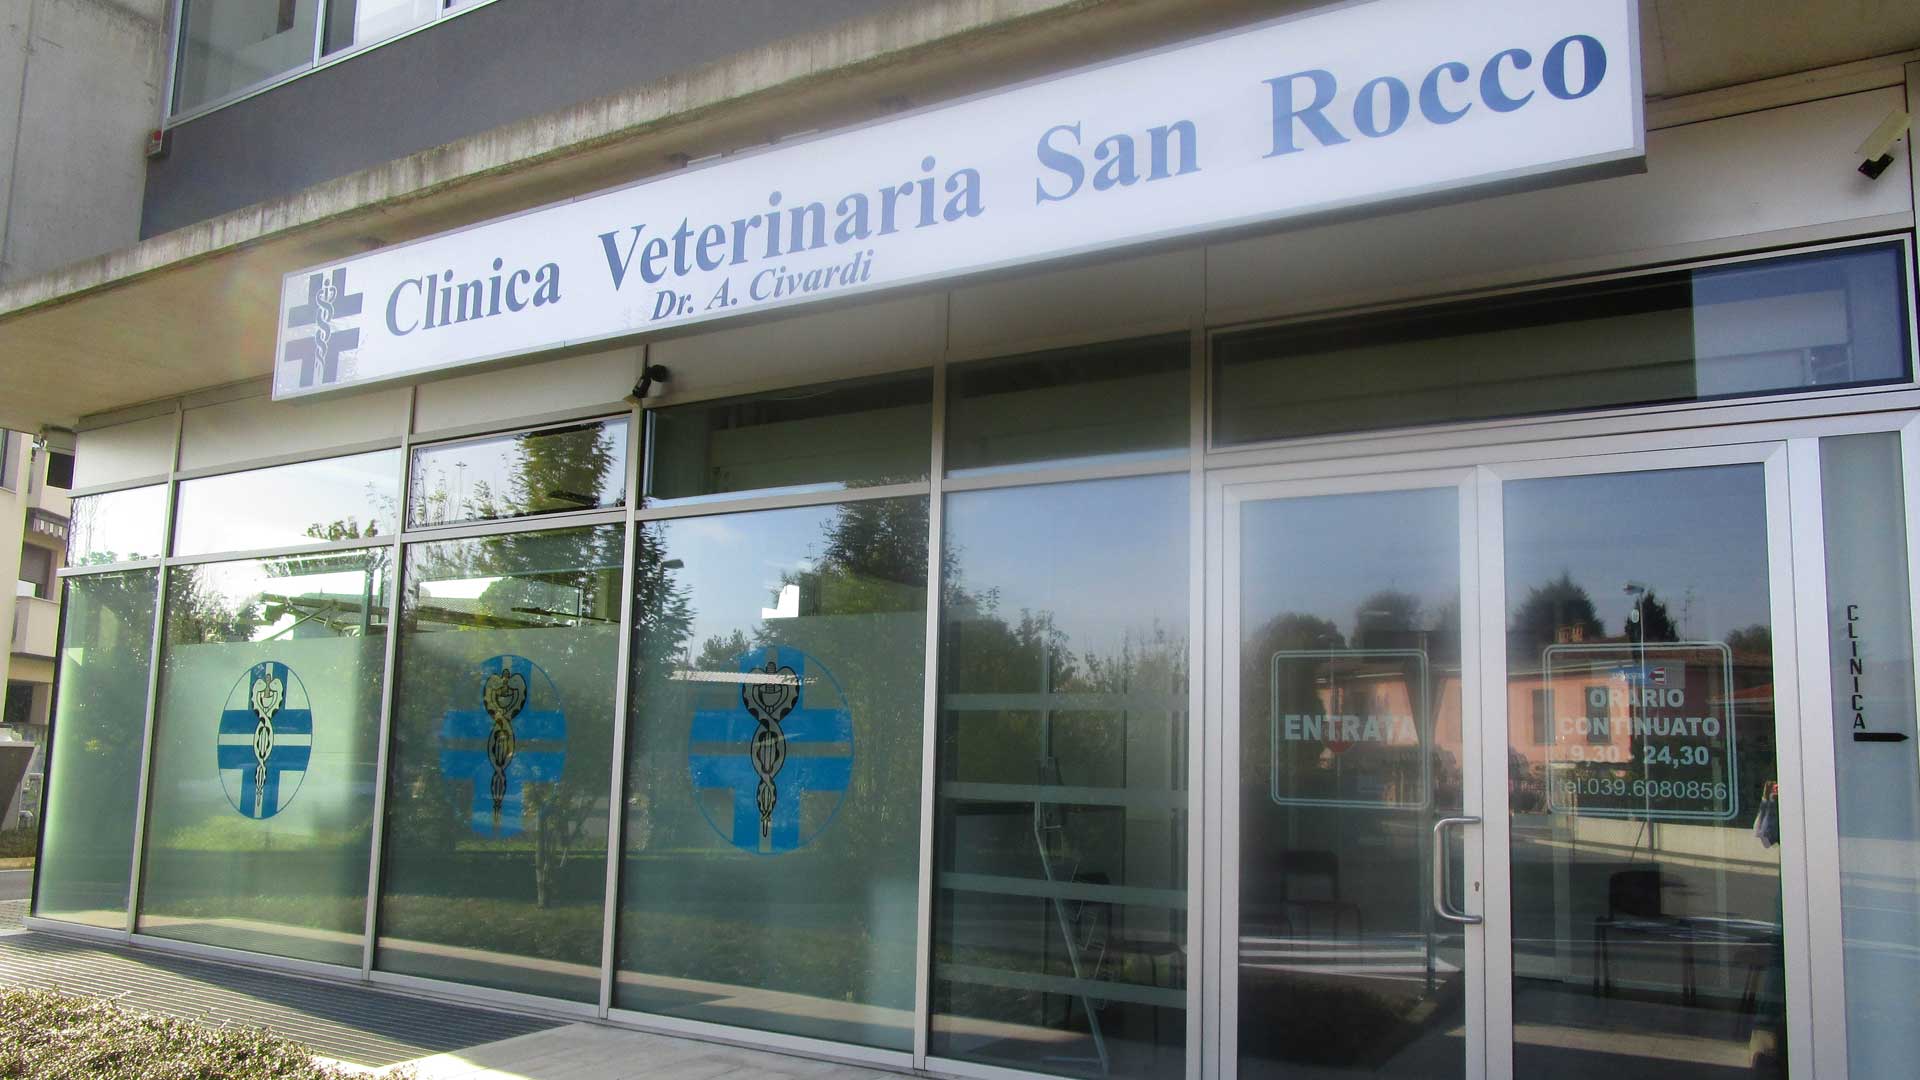 La Clinica Veterinaria San Rocco di Novi Ligure (AL) cerca collaboratori